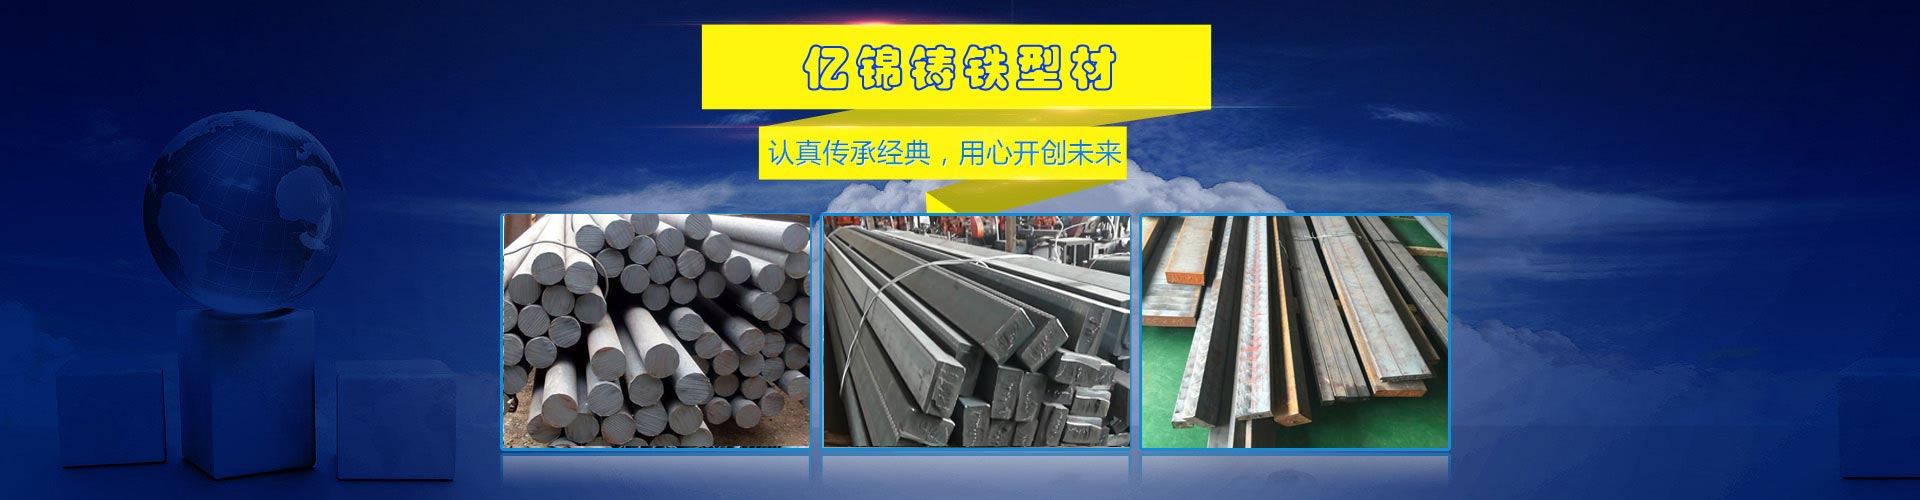 弹簧钢带生产厂家、南宁本地弹簧钢带生产厂家、南宁、南宁弹簧钢带生产厂家